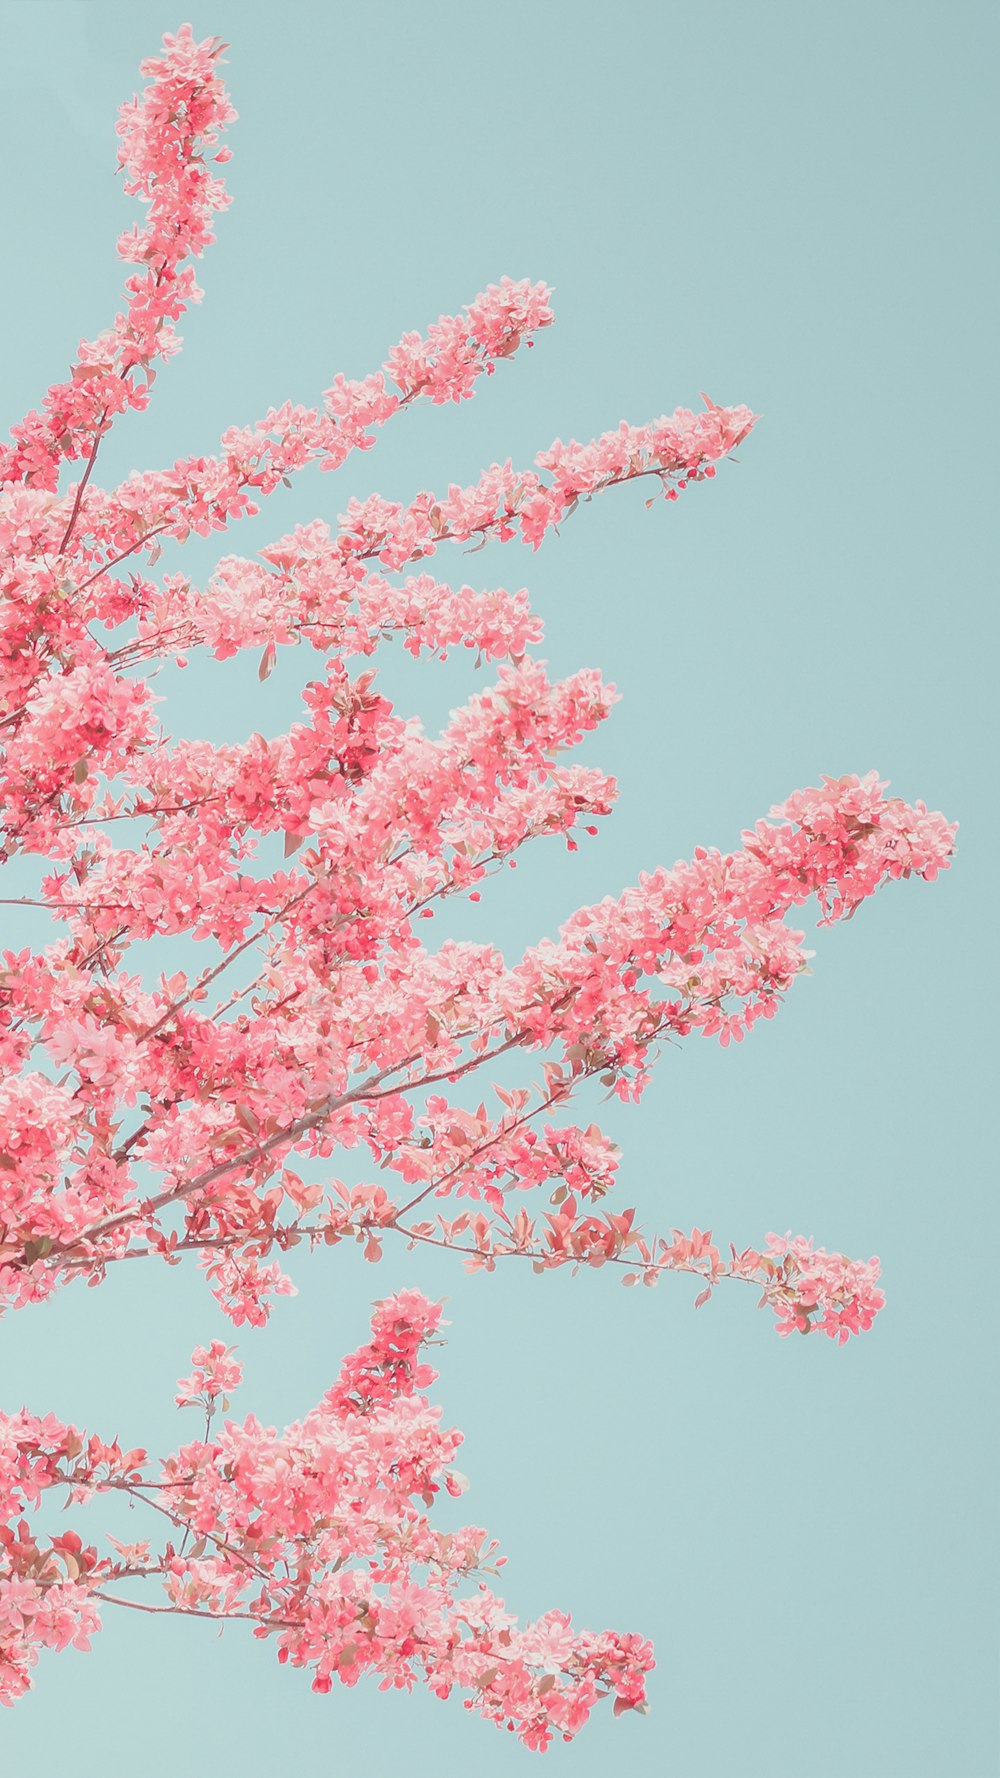 uma árvore com flores cor-de-rosa na frente de um céu azul